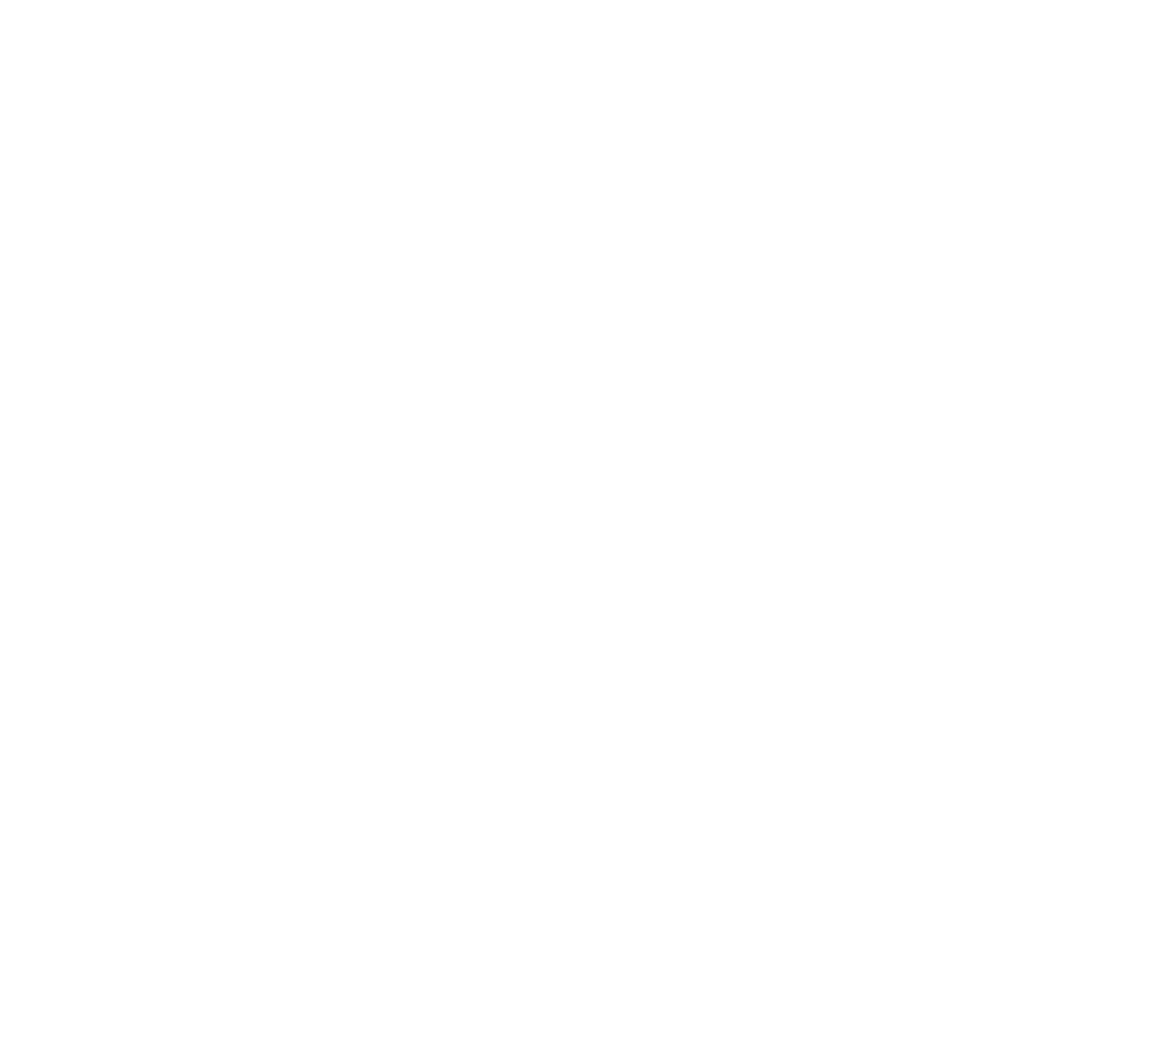 Cat Fancier’s Association